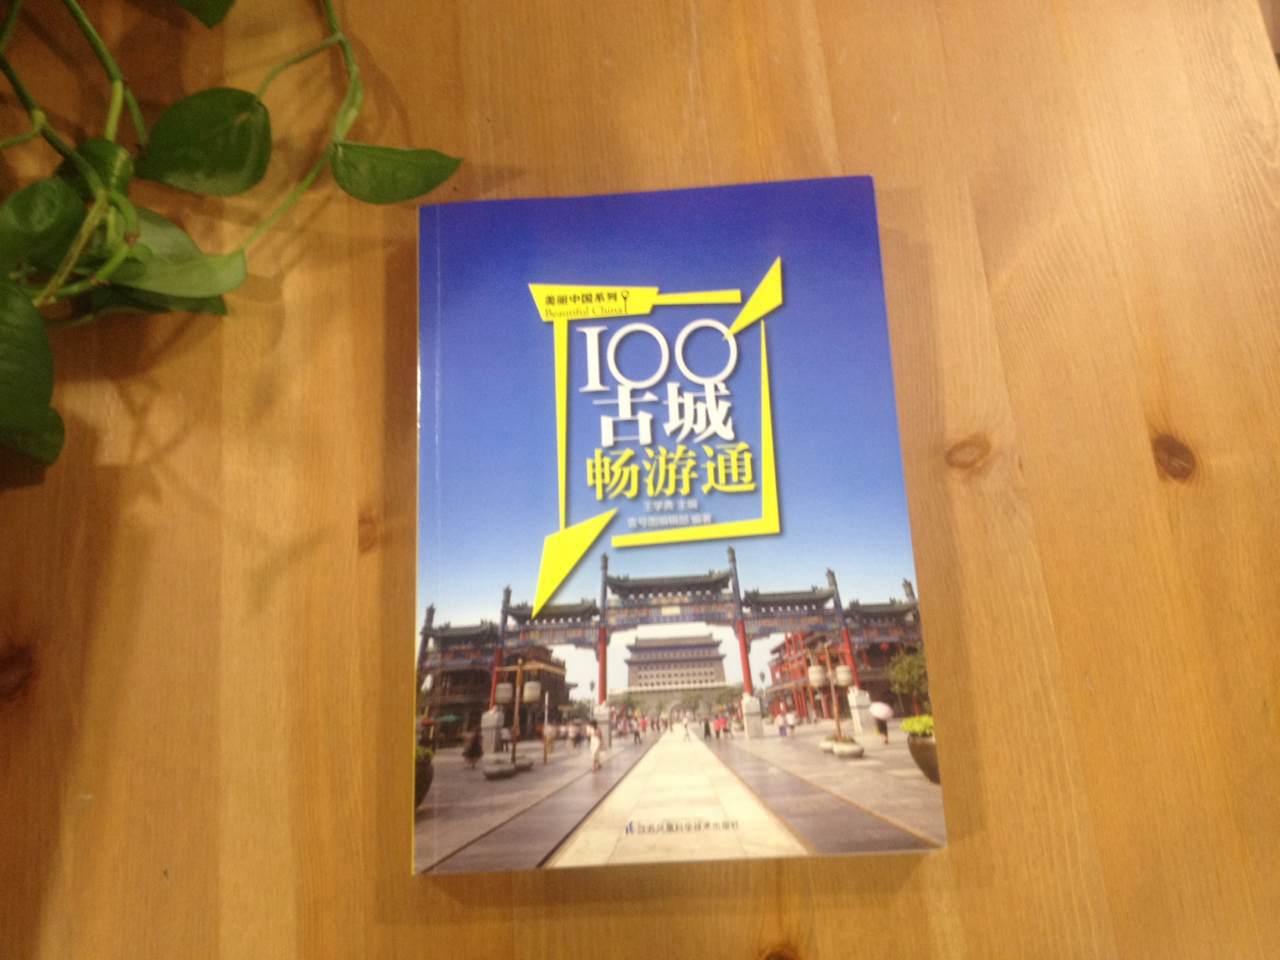 通过这本书，了解了中国的100处魅力古城，伴随优美文字和画面进入古城历史烟云之中，很惬意。点赞！